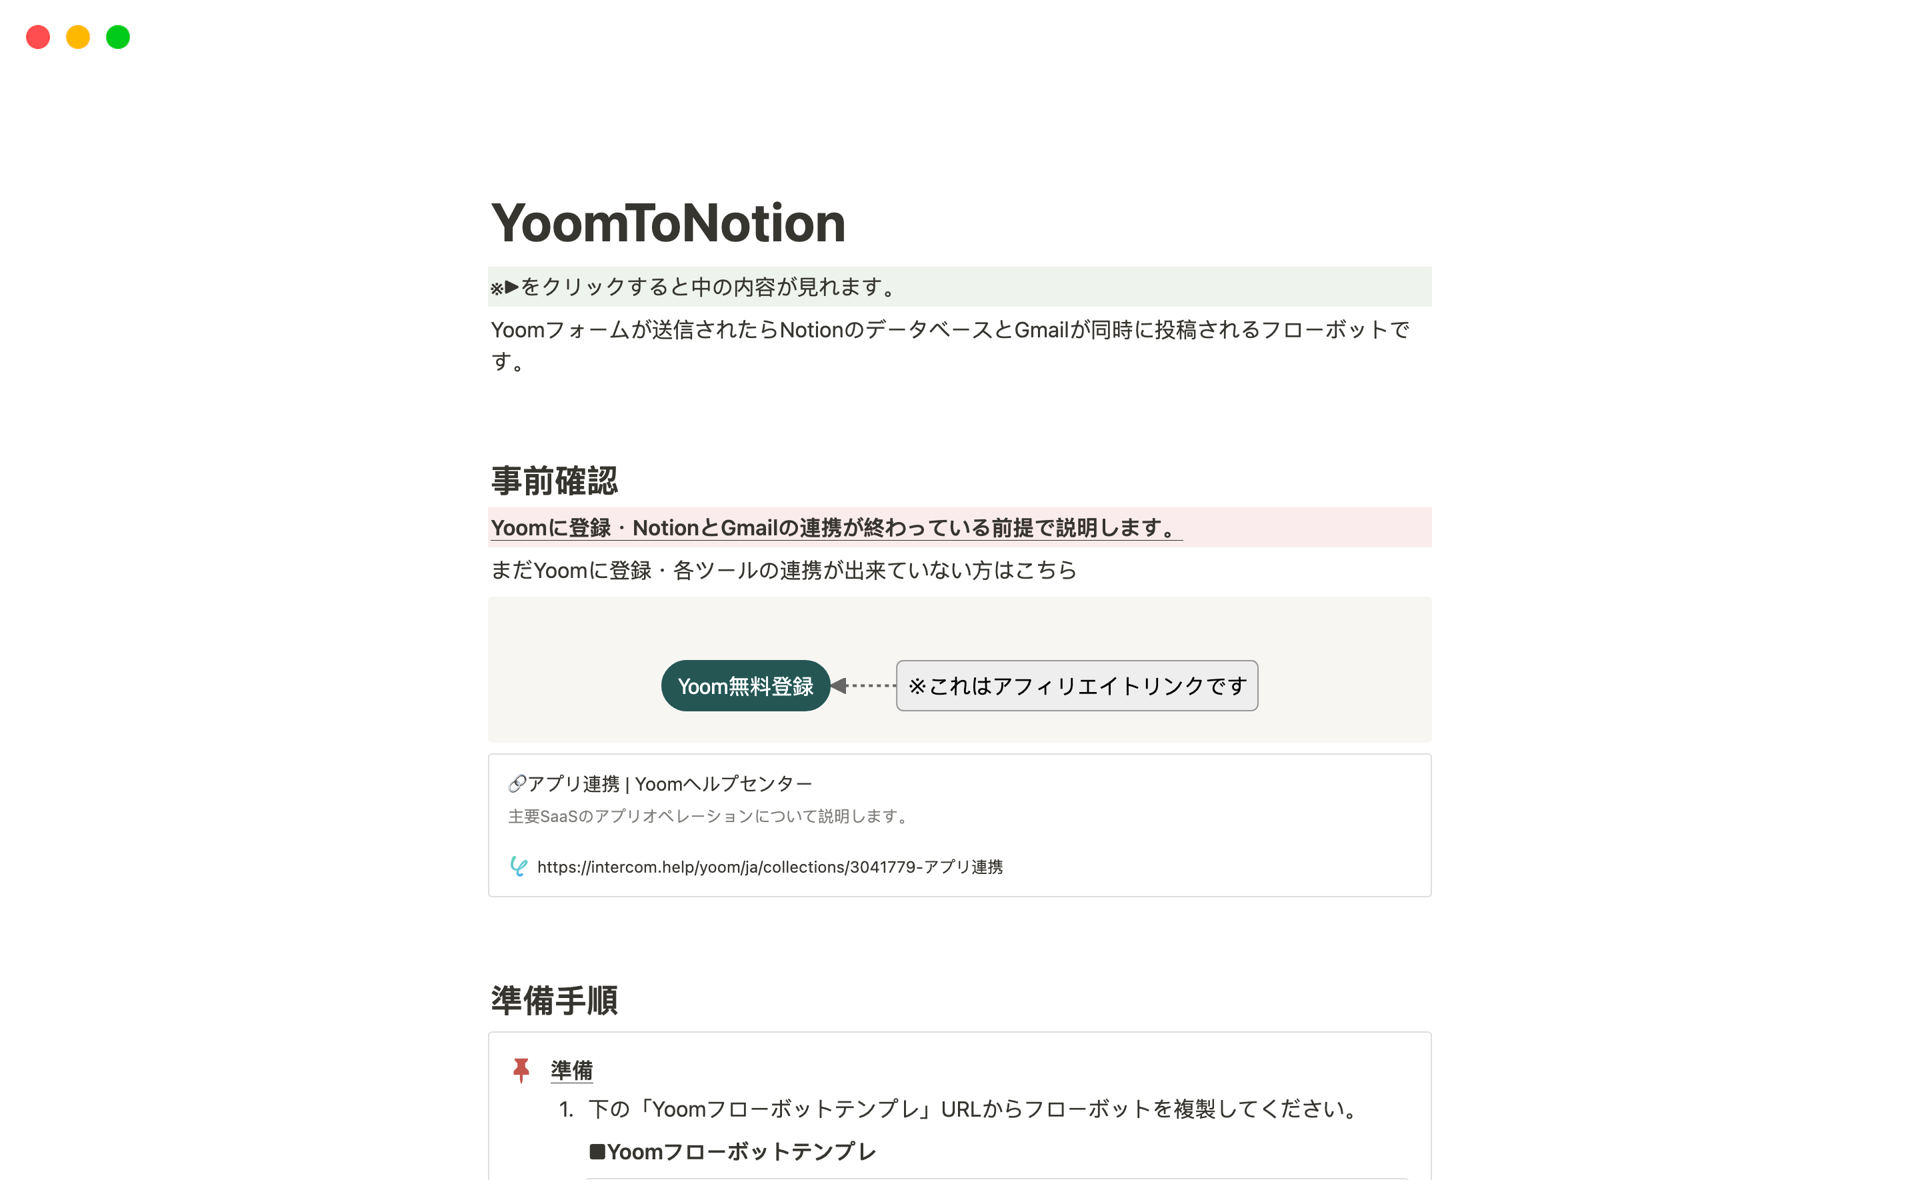 Yoomフォーム→Notionデータベースへ情報を登録＆相手先へGmail自動送信